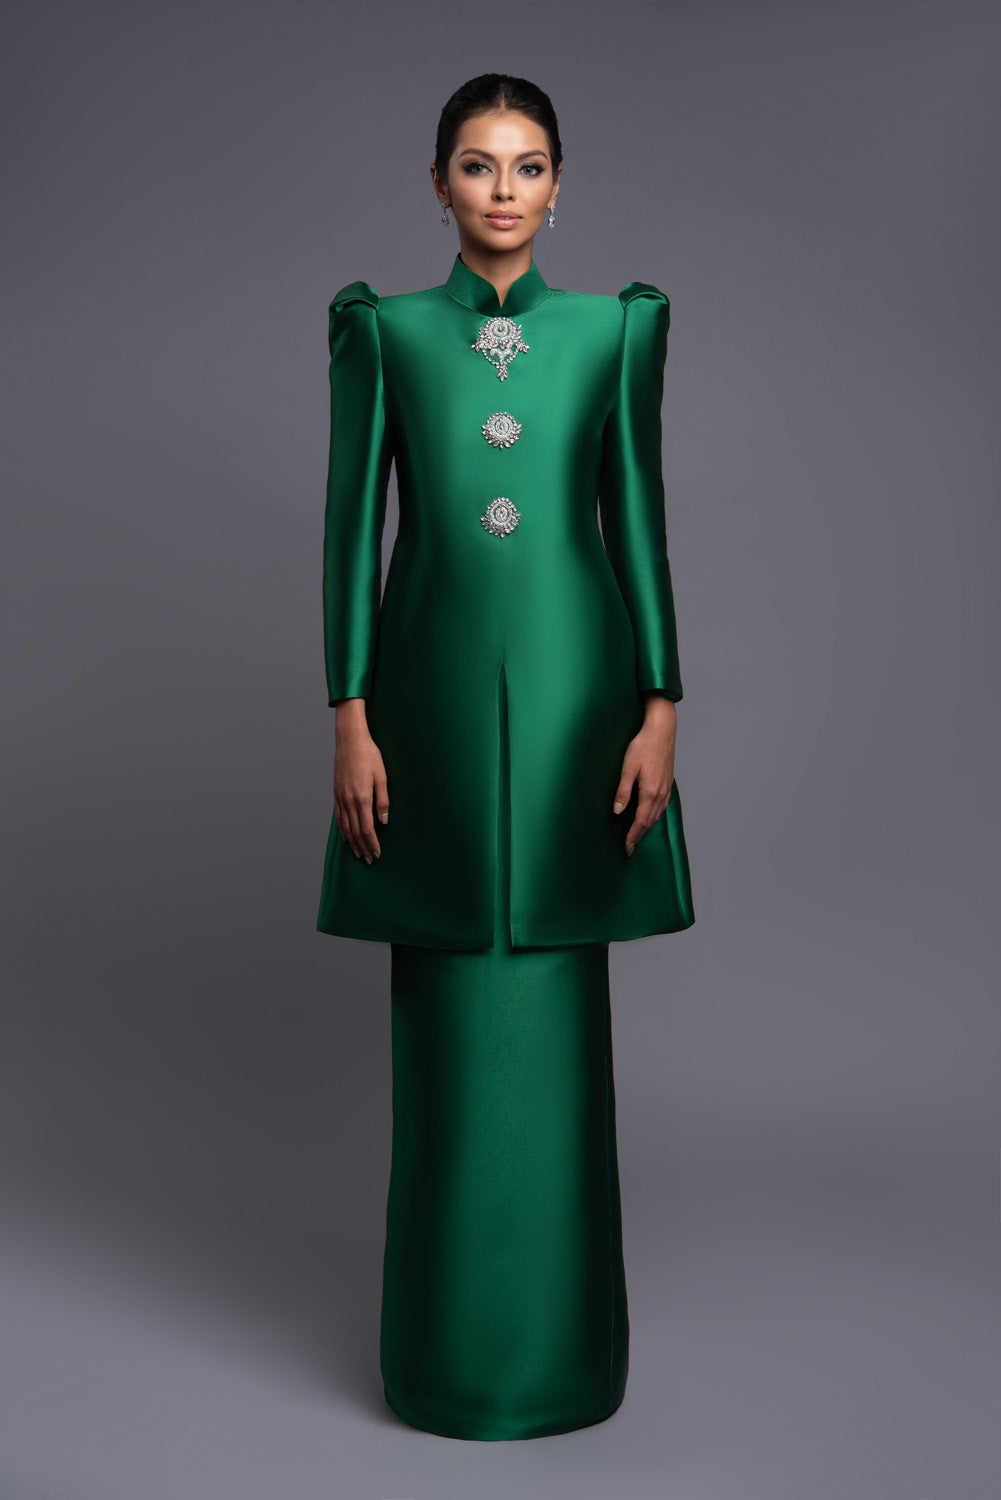 Raesa in Emerald Green